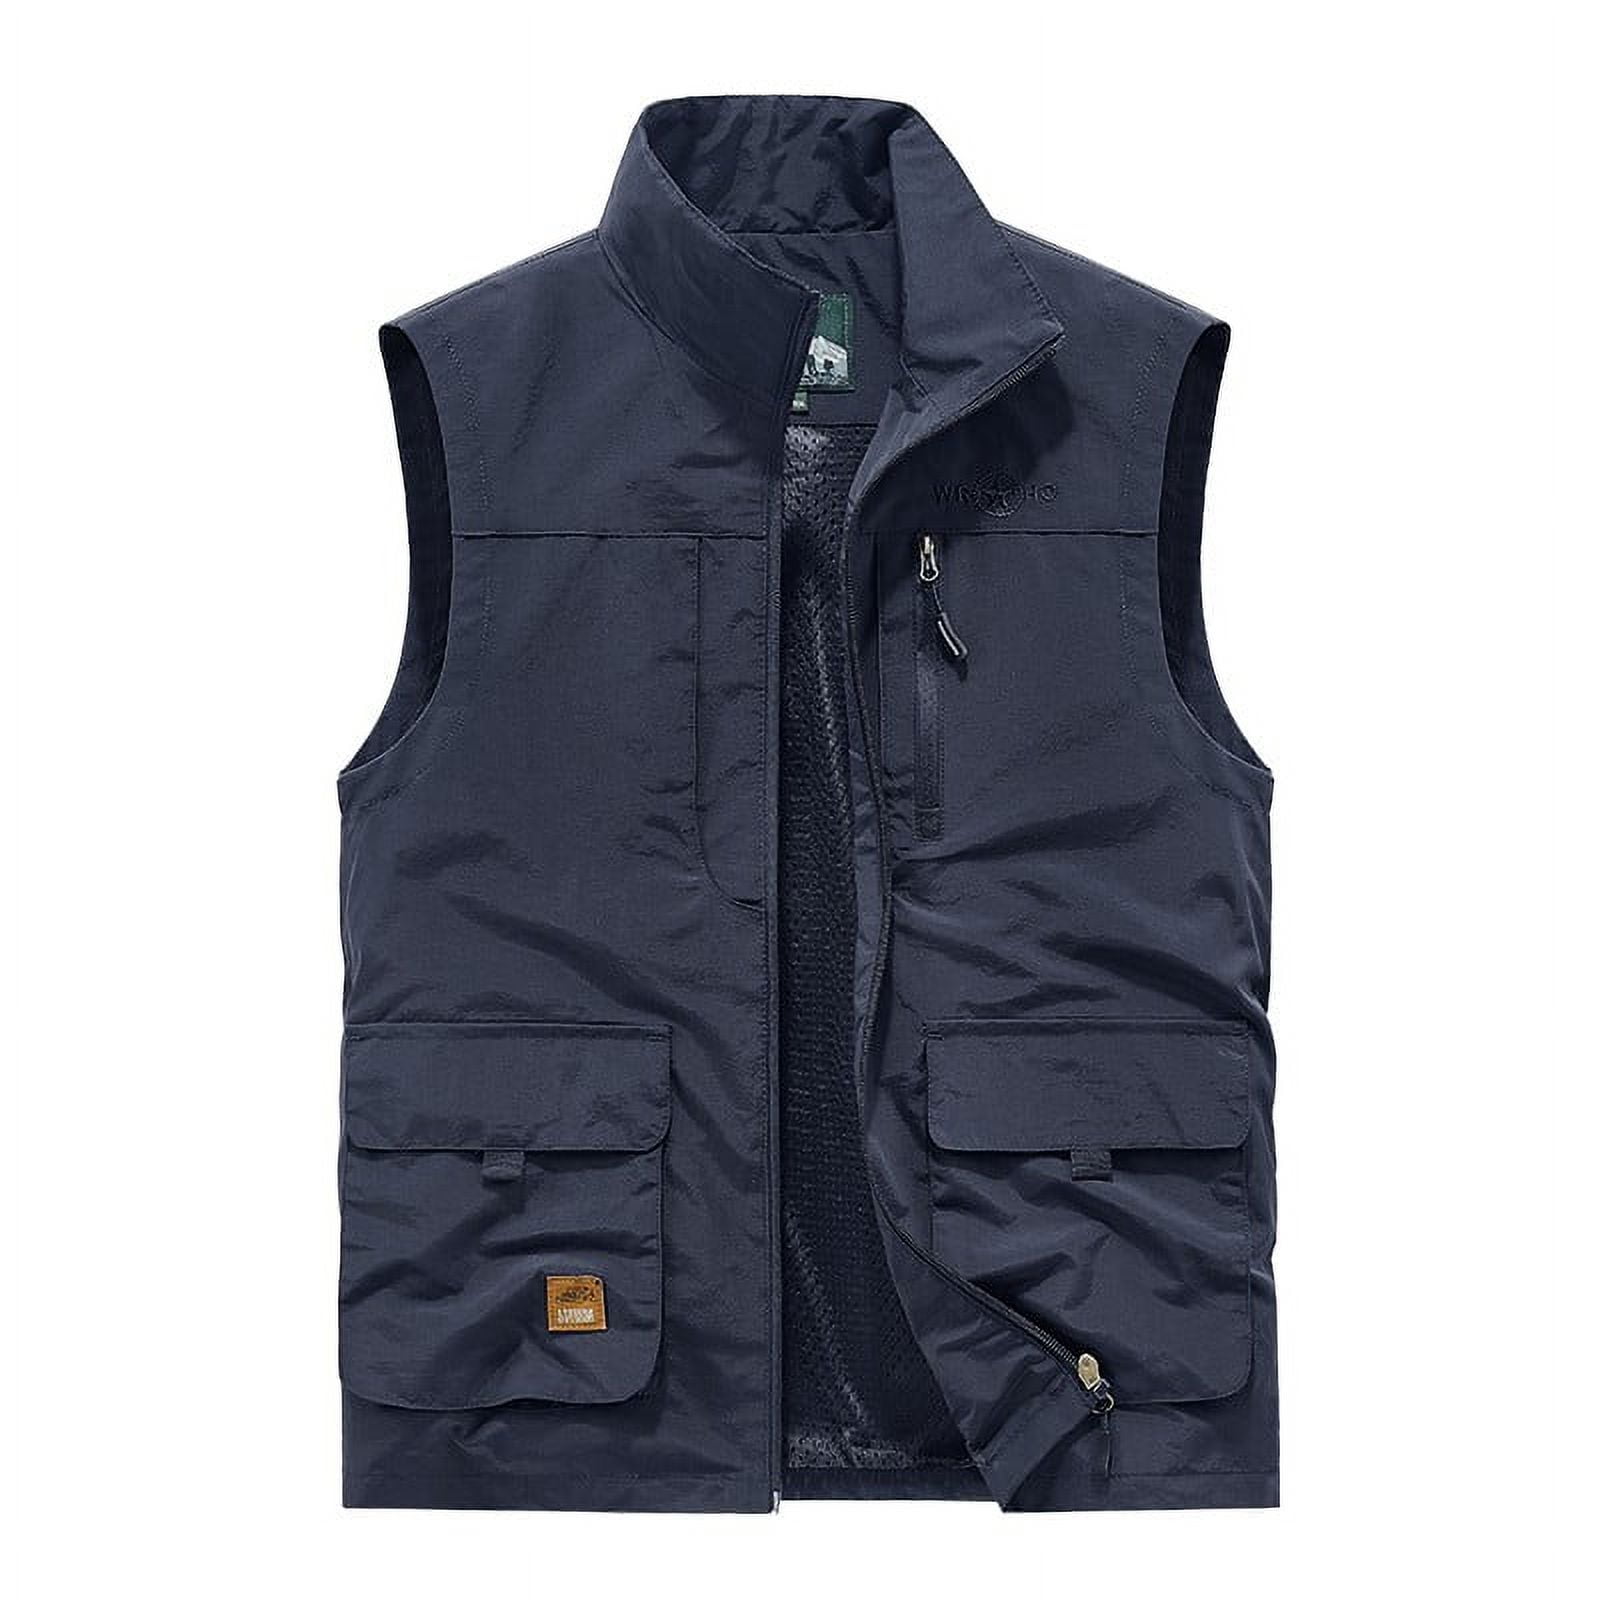 YYDGH Men's Outdoor Fishing Vest Casual Work Cargo Vests